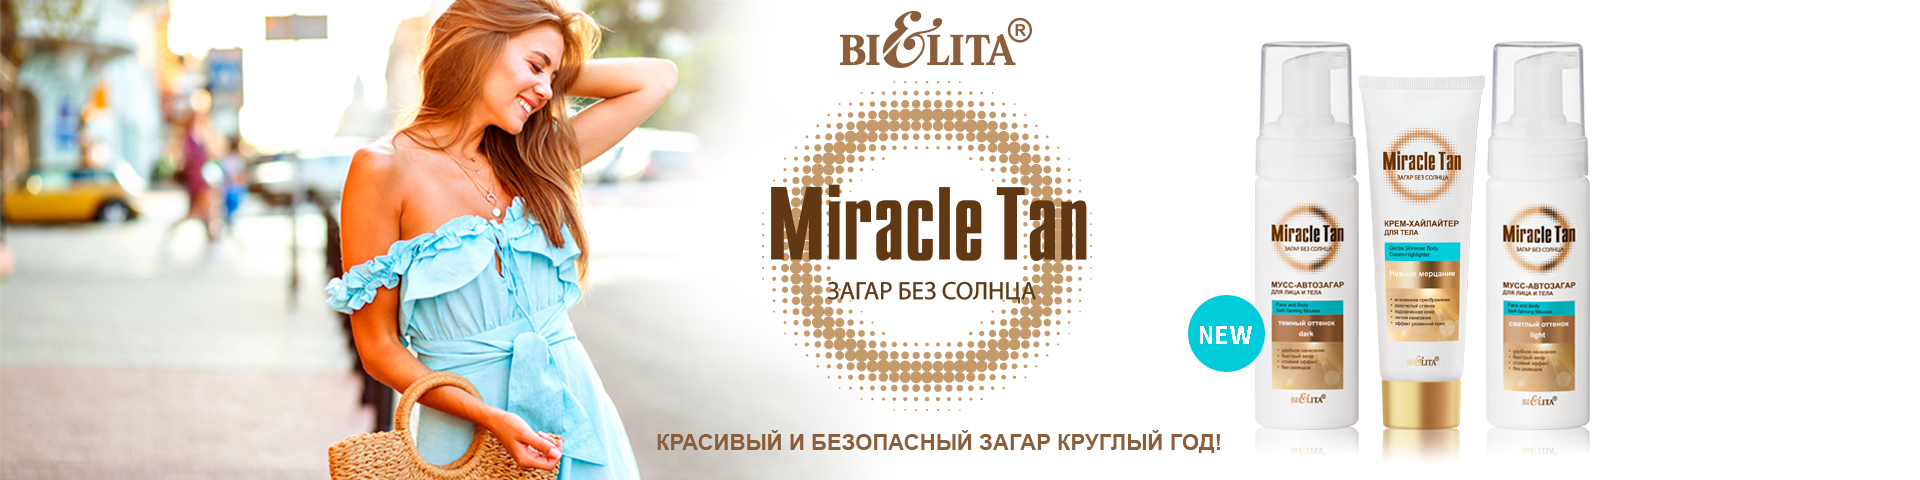 Miracle Tan